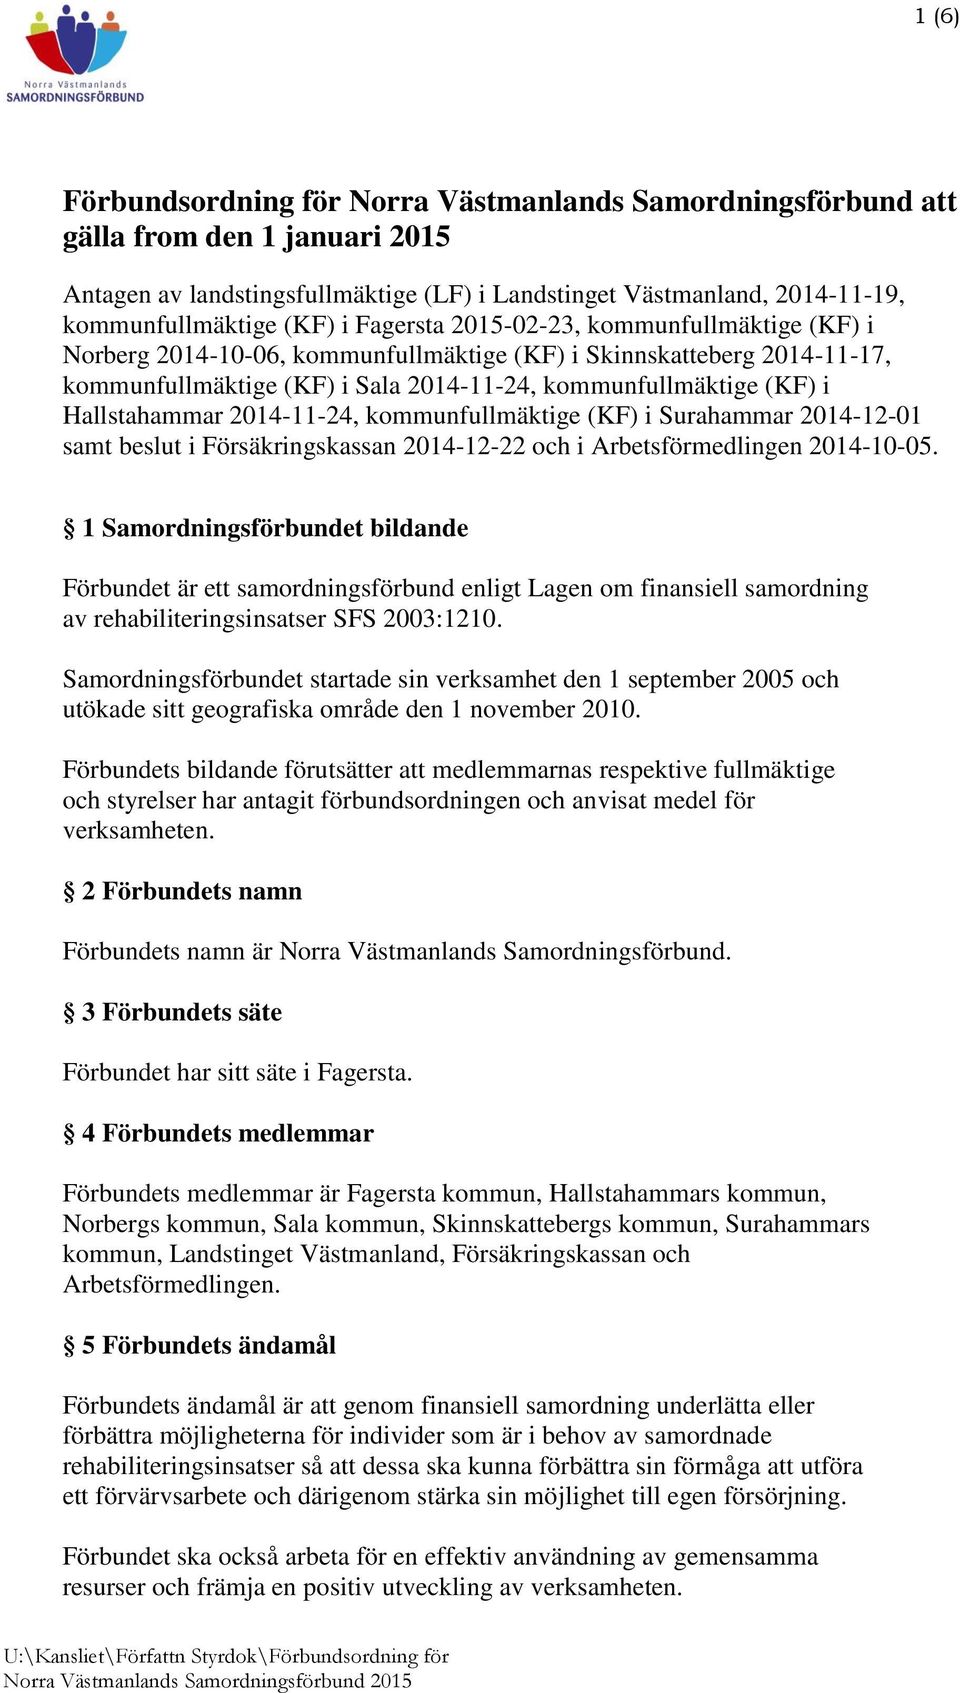 2014-11-24, kommunfullmäktige (KF) i Surahammar 2014-12-01 samt beslut i Försäkringskassan 2014-12-22 och i Arbetsförmedlingen 2014-10-05.